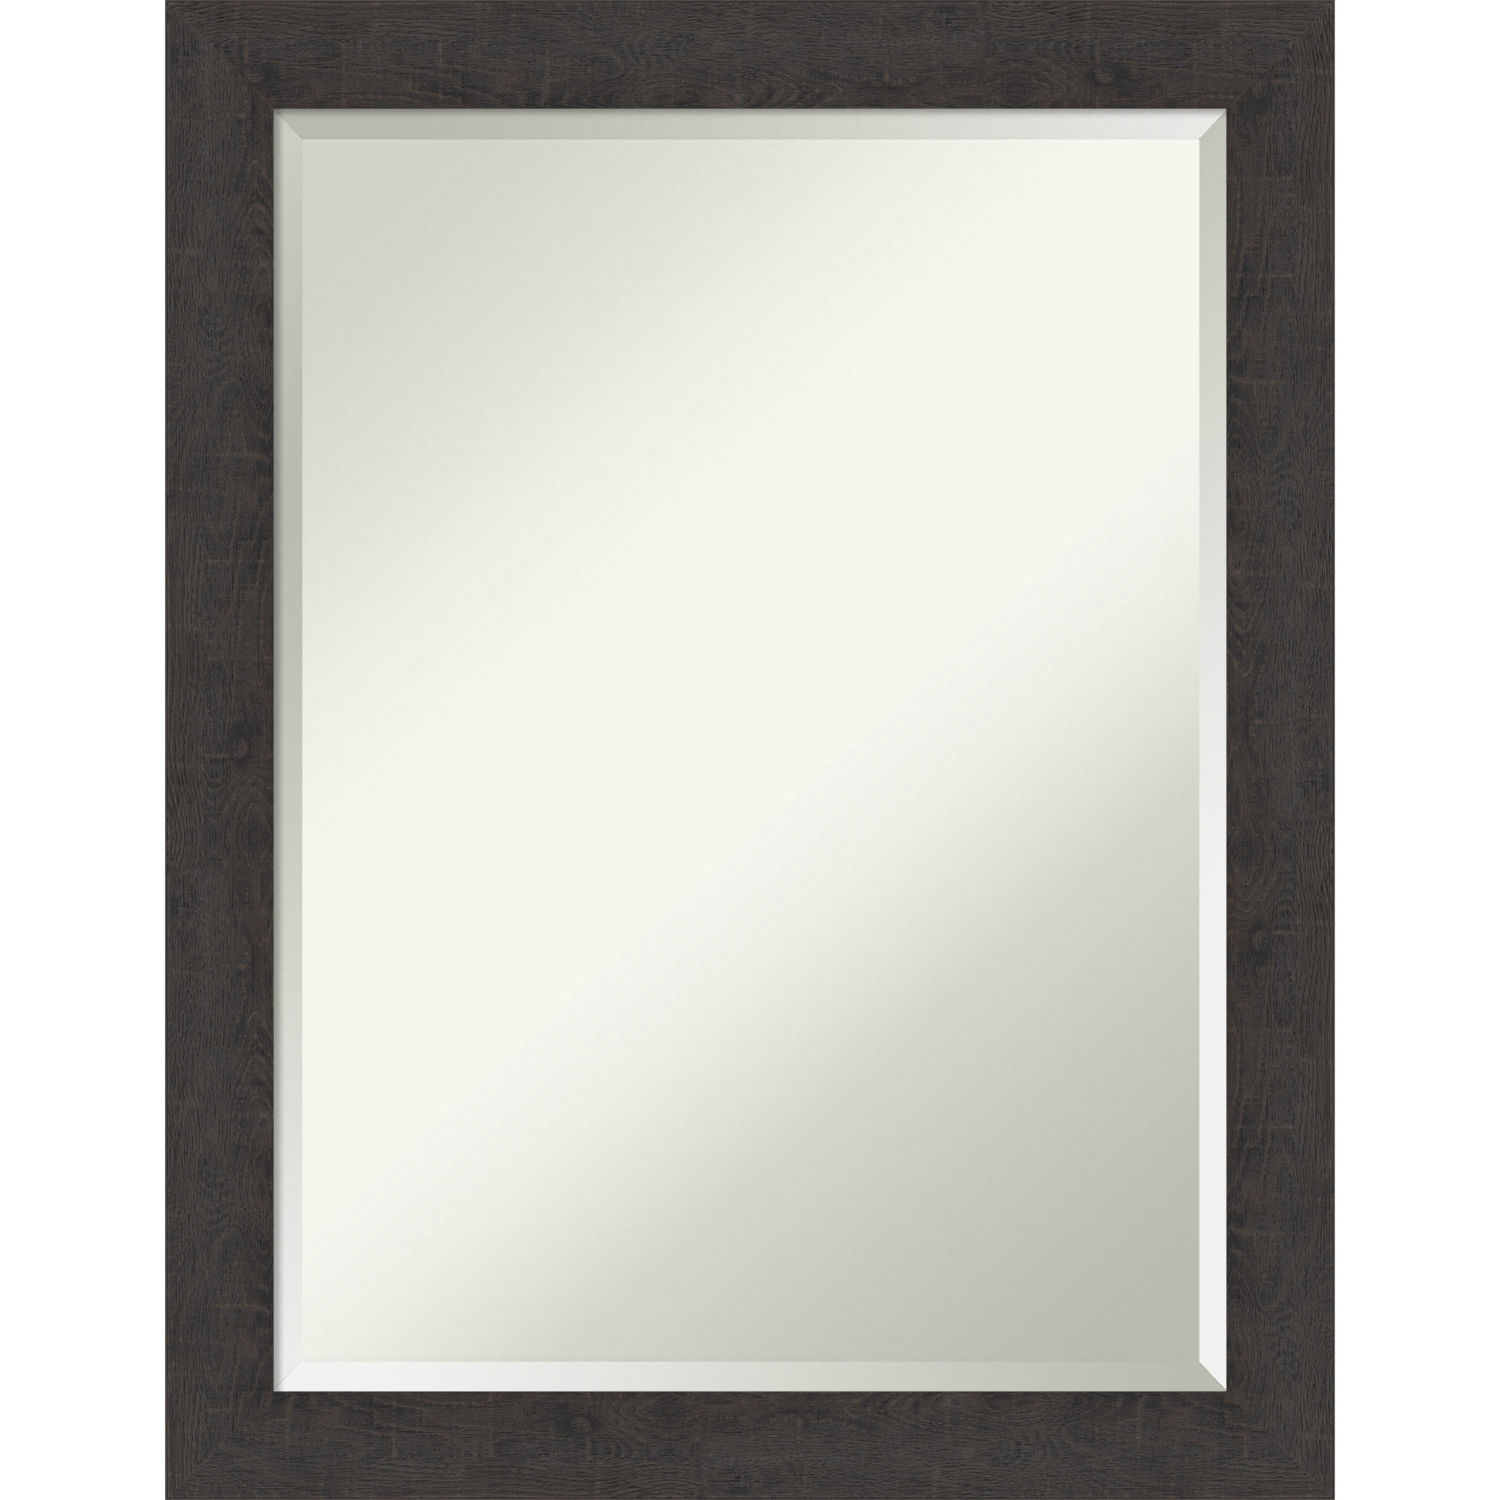 Espresso 21W X 27H-Inch Bathroom Vanity Wall Mirror